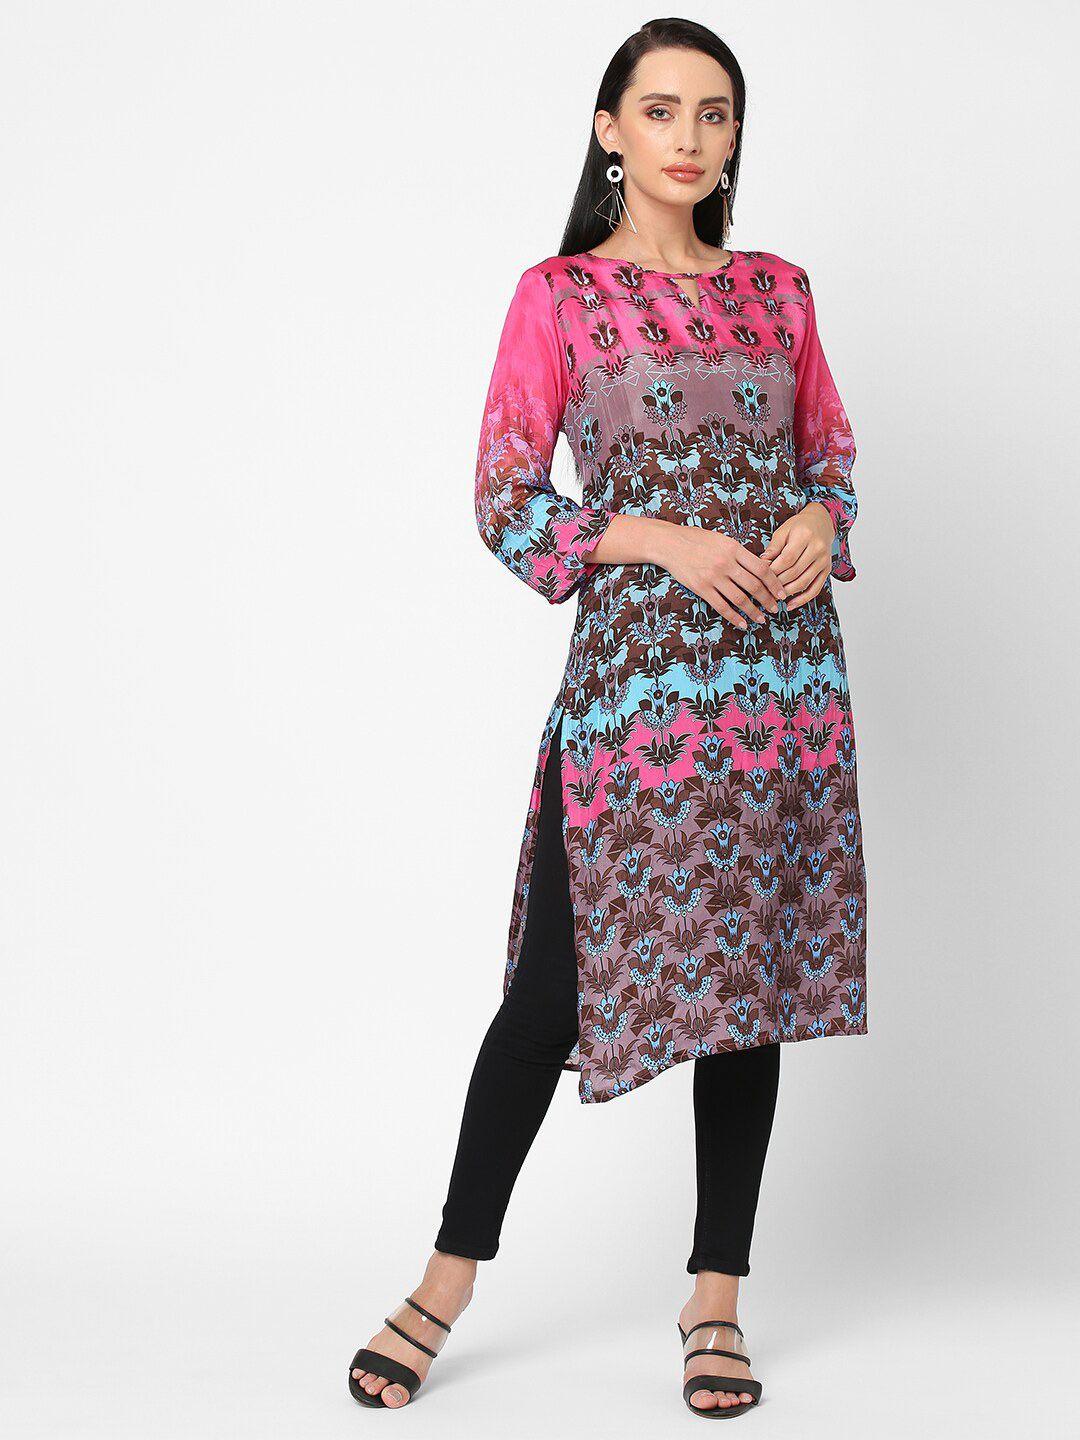 cloth haus india women pink & brown ethnic motifs printed kurta